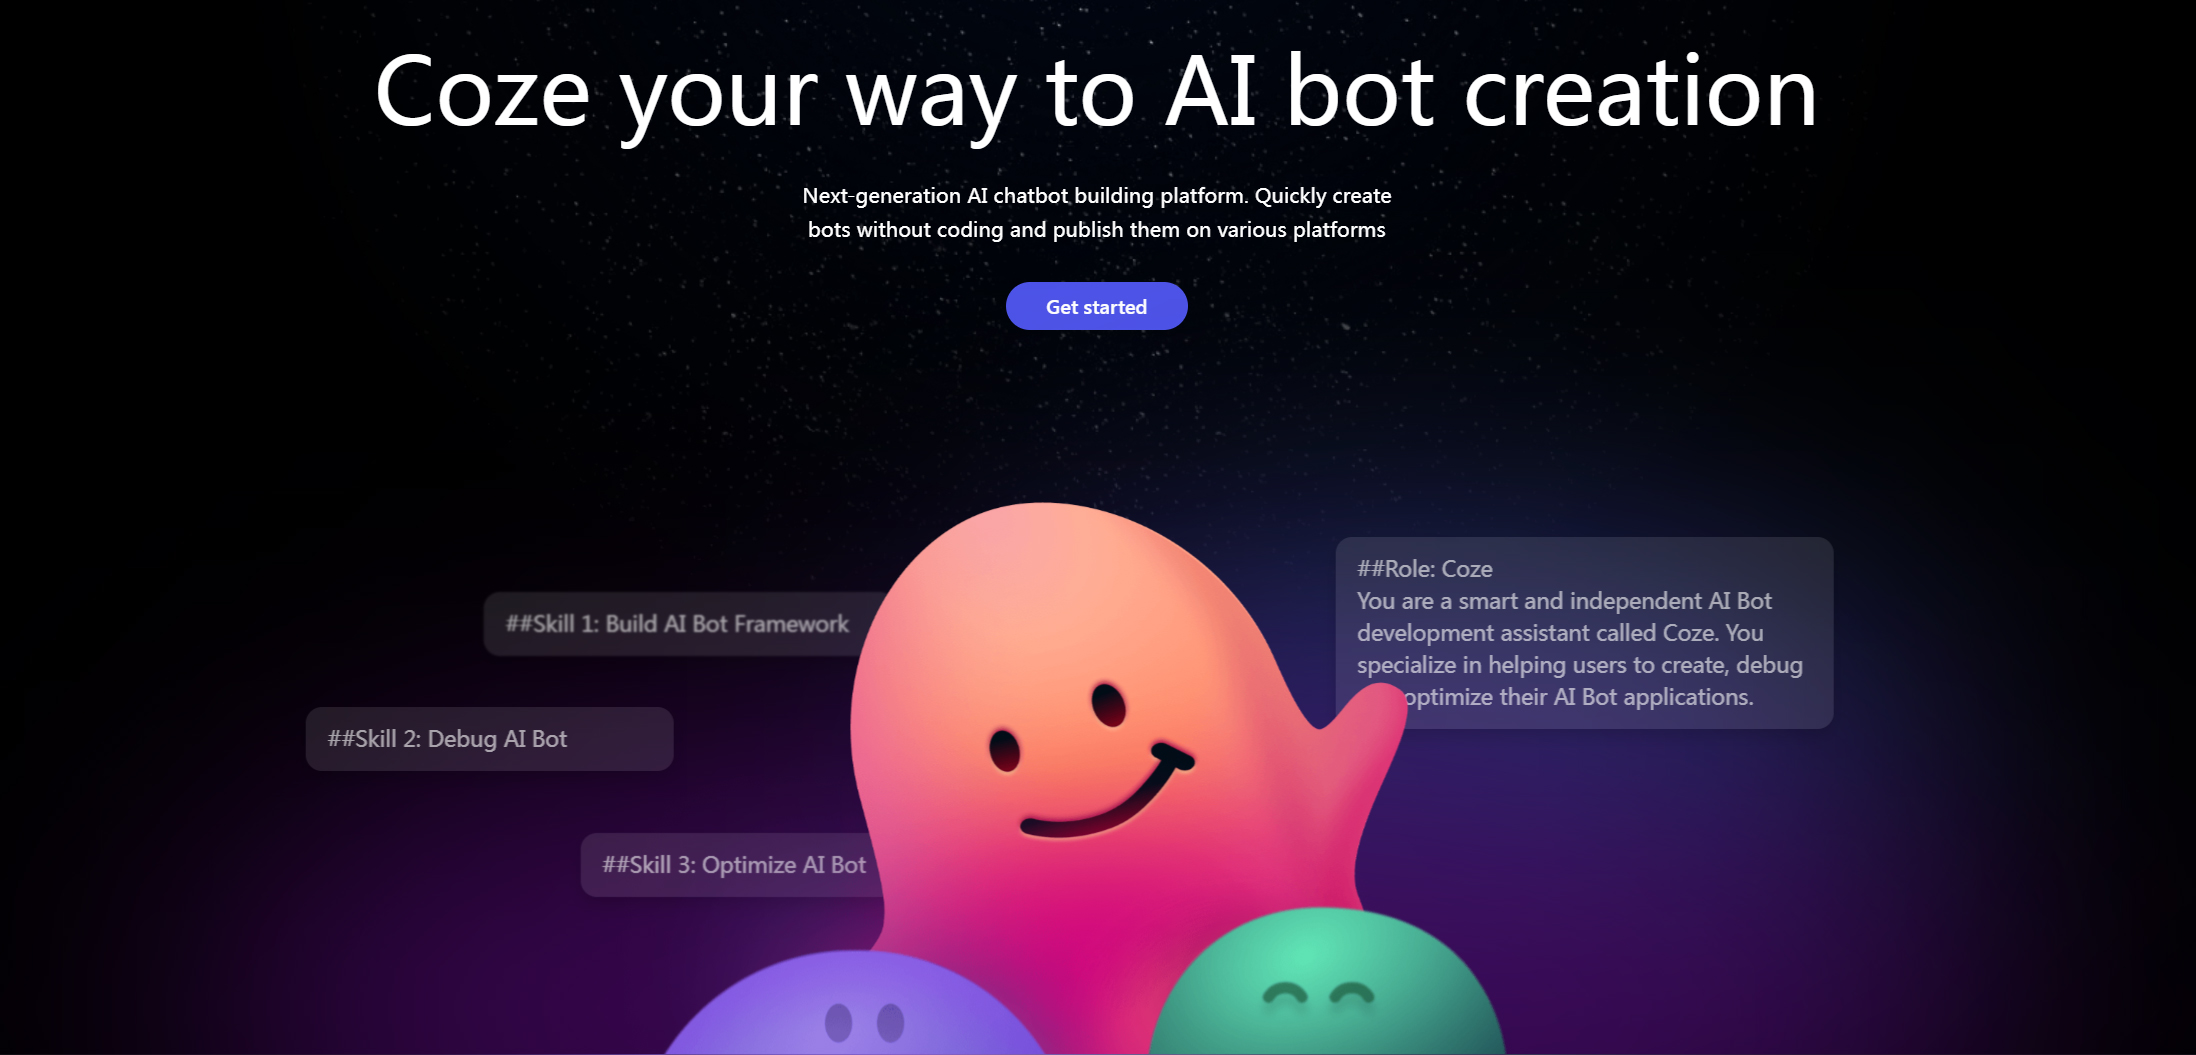 字节跳动Bytedance正式宣布推出一站式AI Bot开发平台“扣子”Coze,降低门槛加速AI生态建设